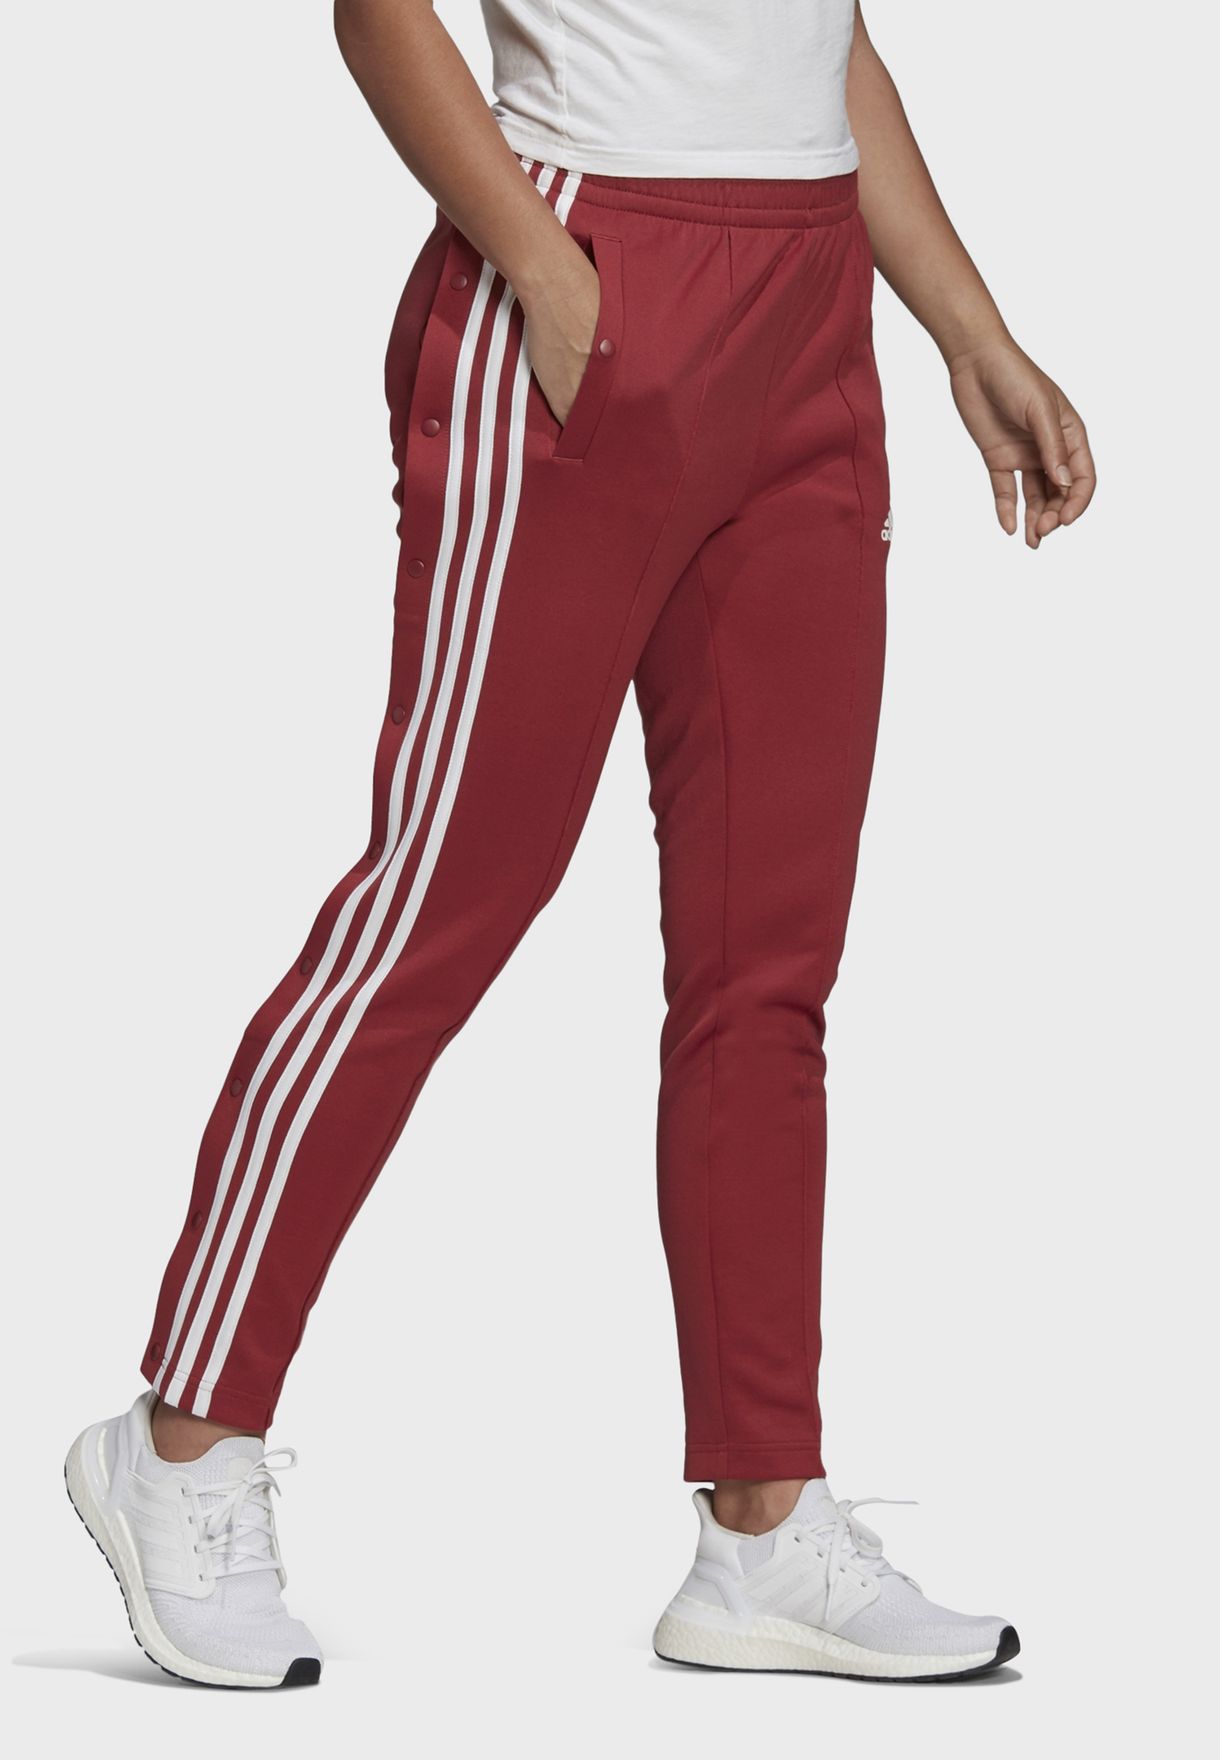 adidas snap pants red